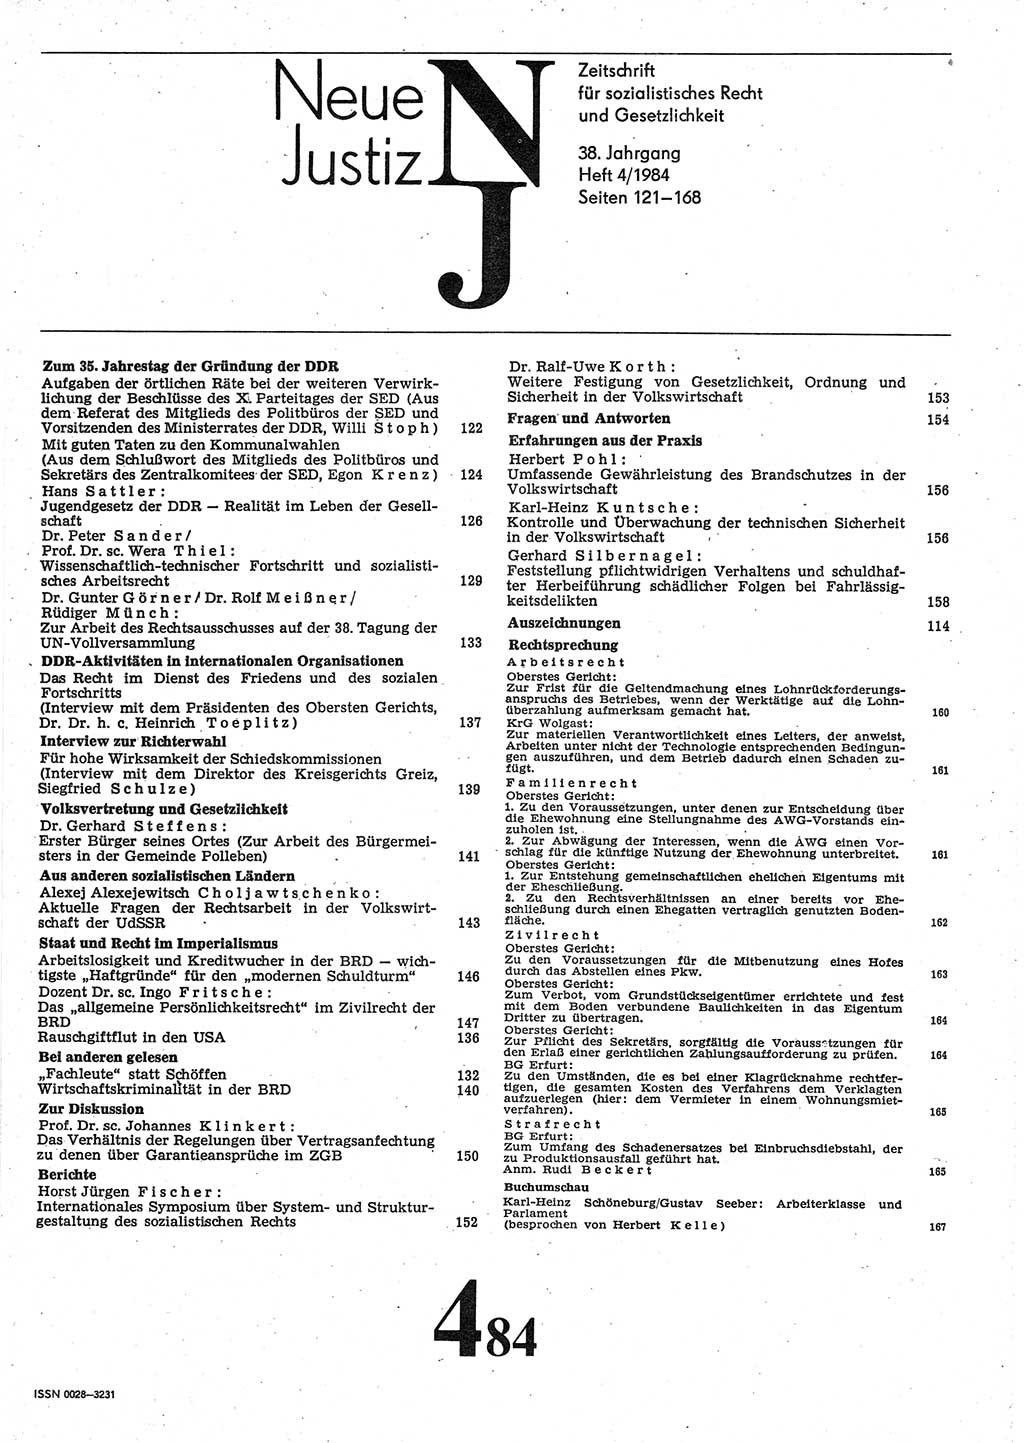 Neue Justiz (NJ), Zeitschrift für sozialistisches Recht und Gesetzlichkeit [Deutsche Demokratische Republik (DDR)], 38. Jahrgang 1984, Seite 121 (NJ DDR 1984, S. 121)